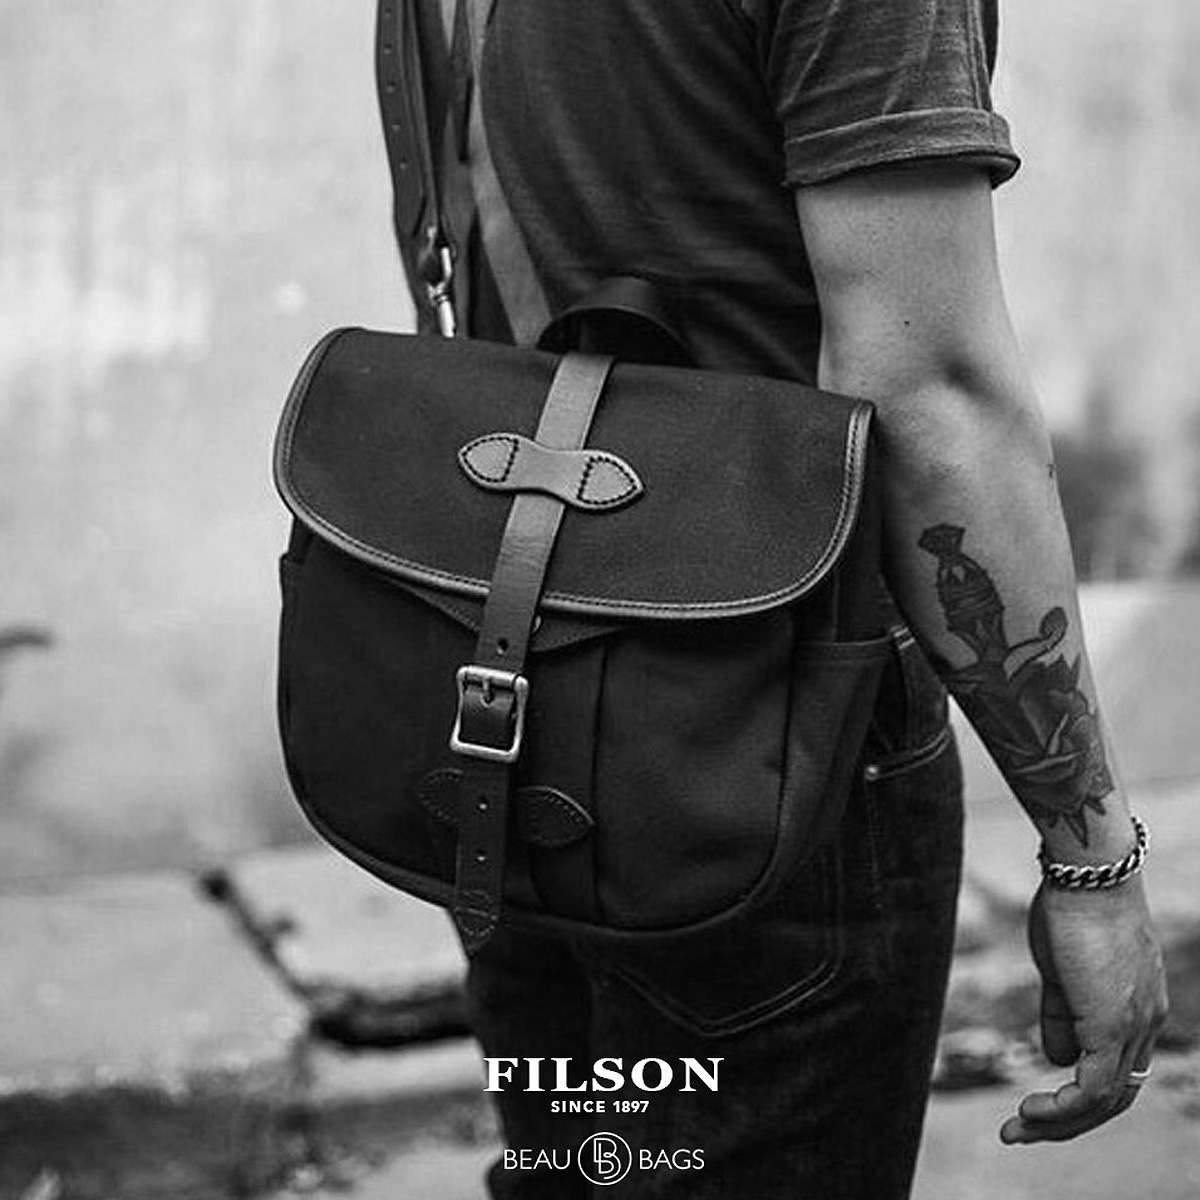 Filson Field Bag Small Black, für Männer und Frauen mit Stil und Liebe zur Qualität